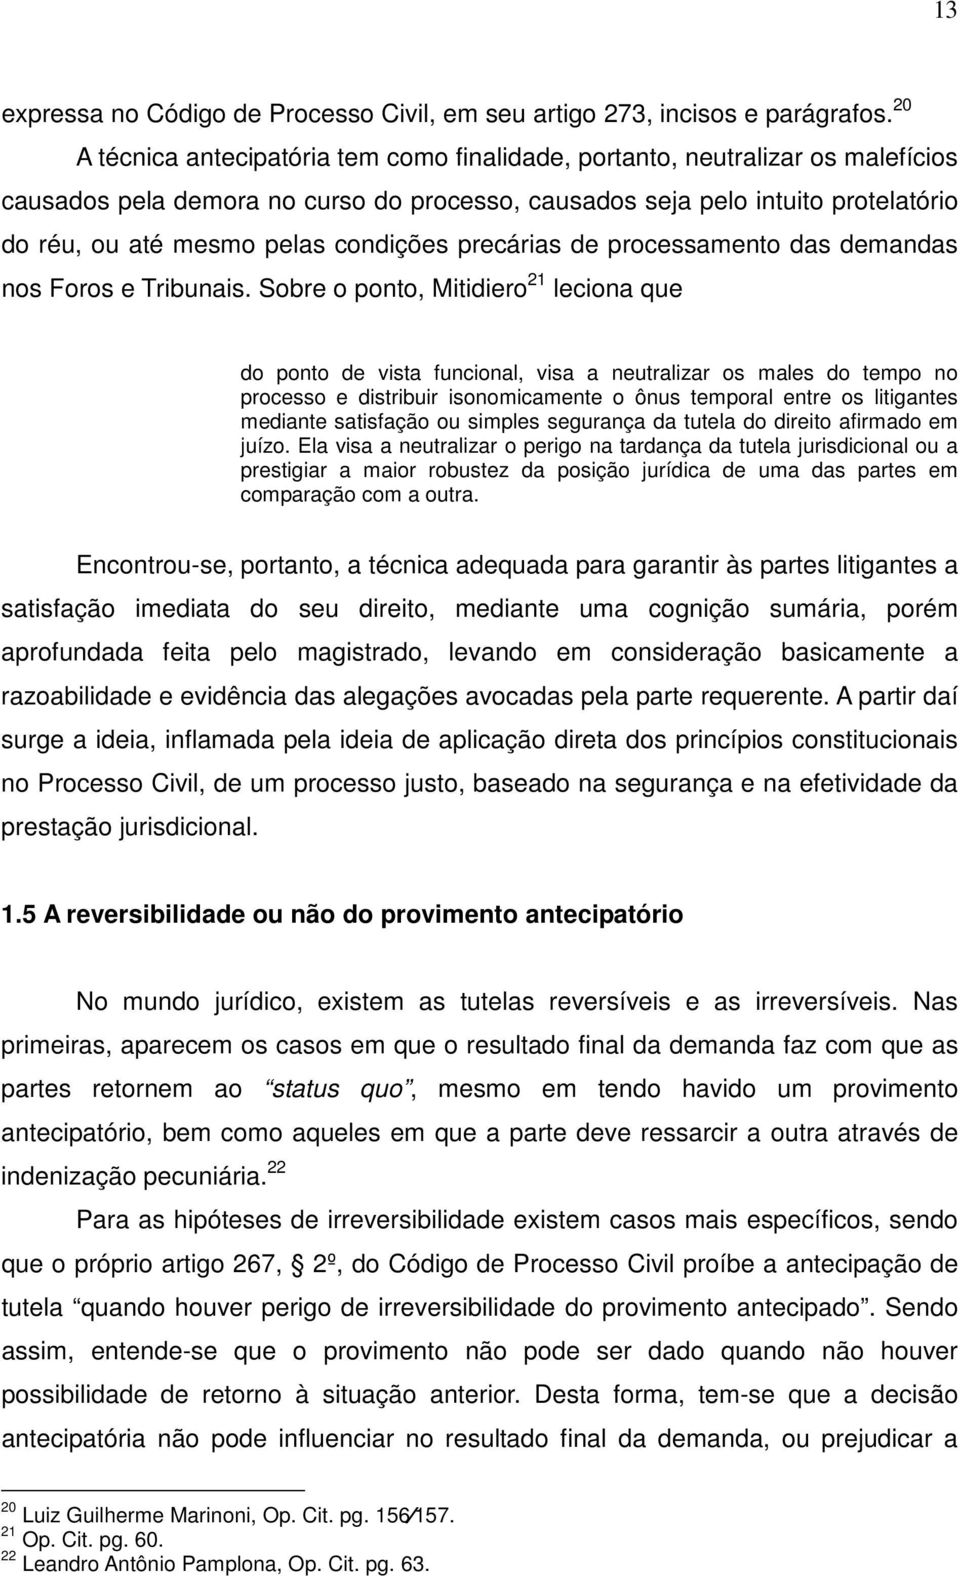 condições precárias de processamento das demandas nos Foros e Tribunais.